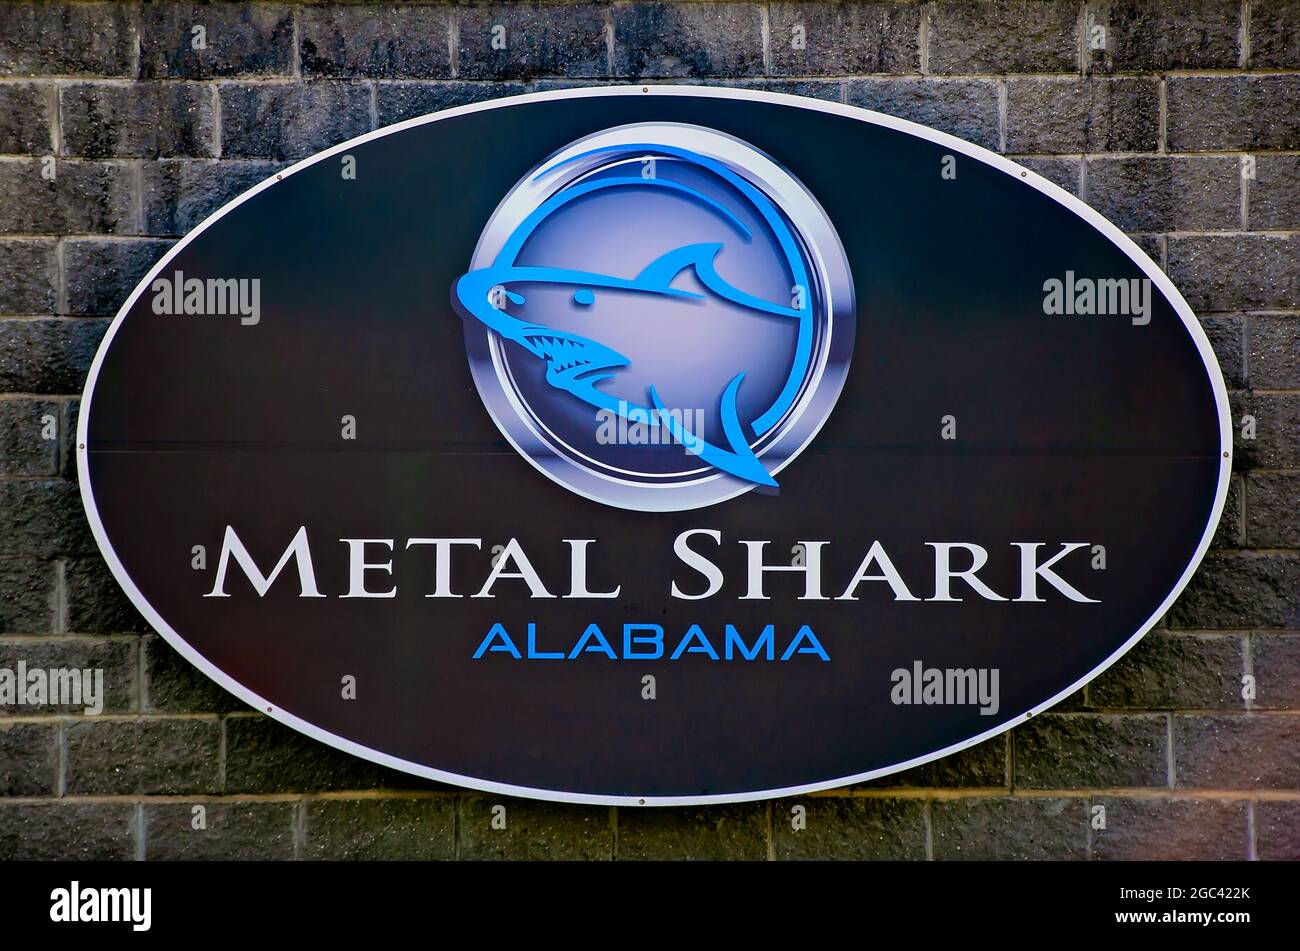 La compagnia di costruzioni navali Metal Shark è raffigurata, il 13 luglio 2021, a Bayou la Batre, Alabama. L'azienda è specializzata nella progettazione e produzione di imbarcazioni. Foto Stock